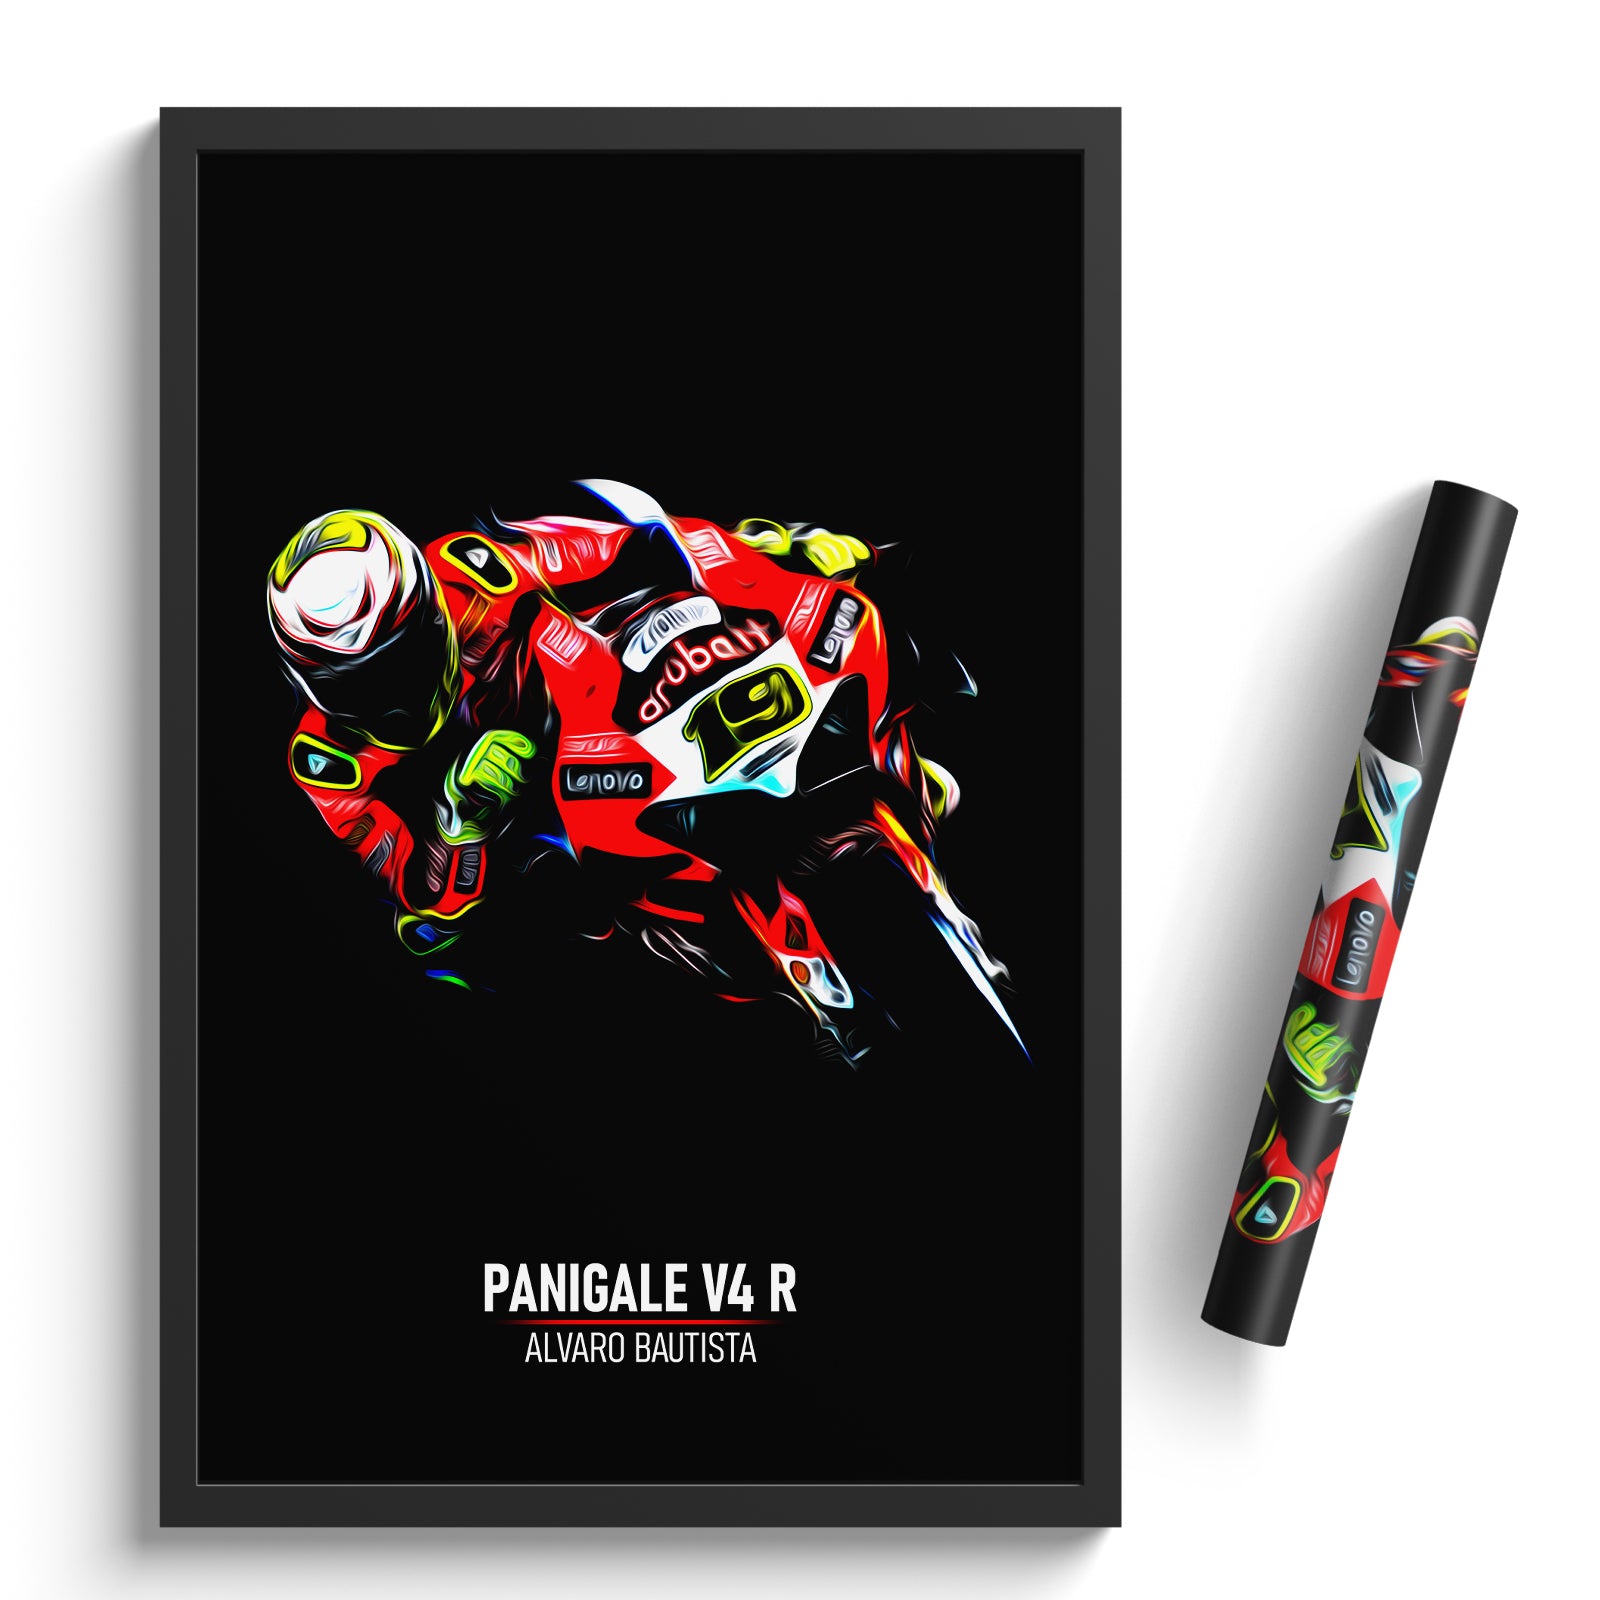 Ducati Panigale V4 R, Alvaro Baustista 2022 - WorldSBK Print